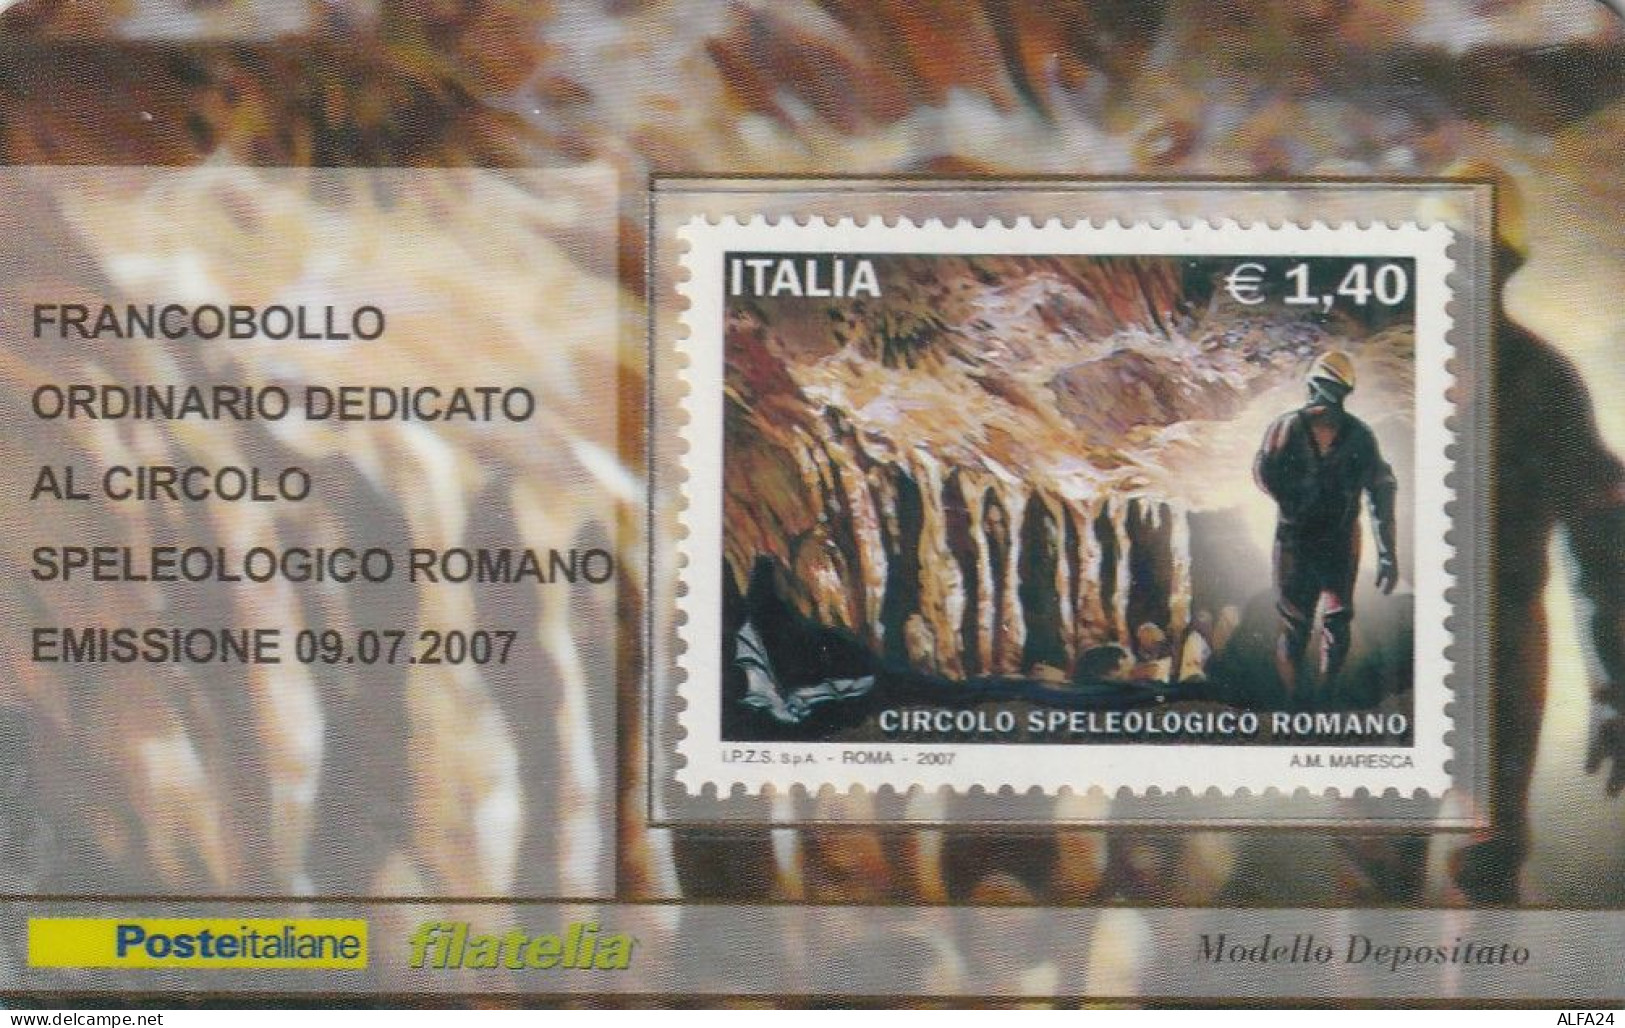 TESSERA FILATELICA VALORE 1,4 EURO CIRCOLO SPELEOLOGICO ROMANO (TF985 - Philatelistische Karten